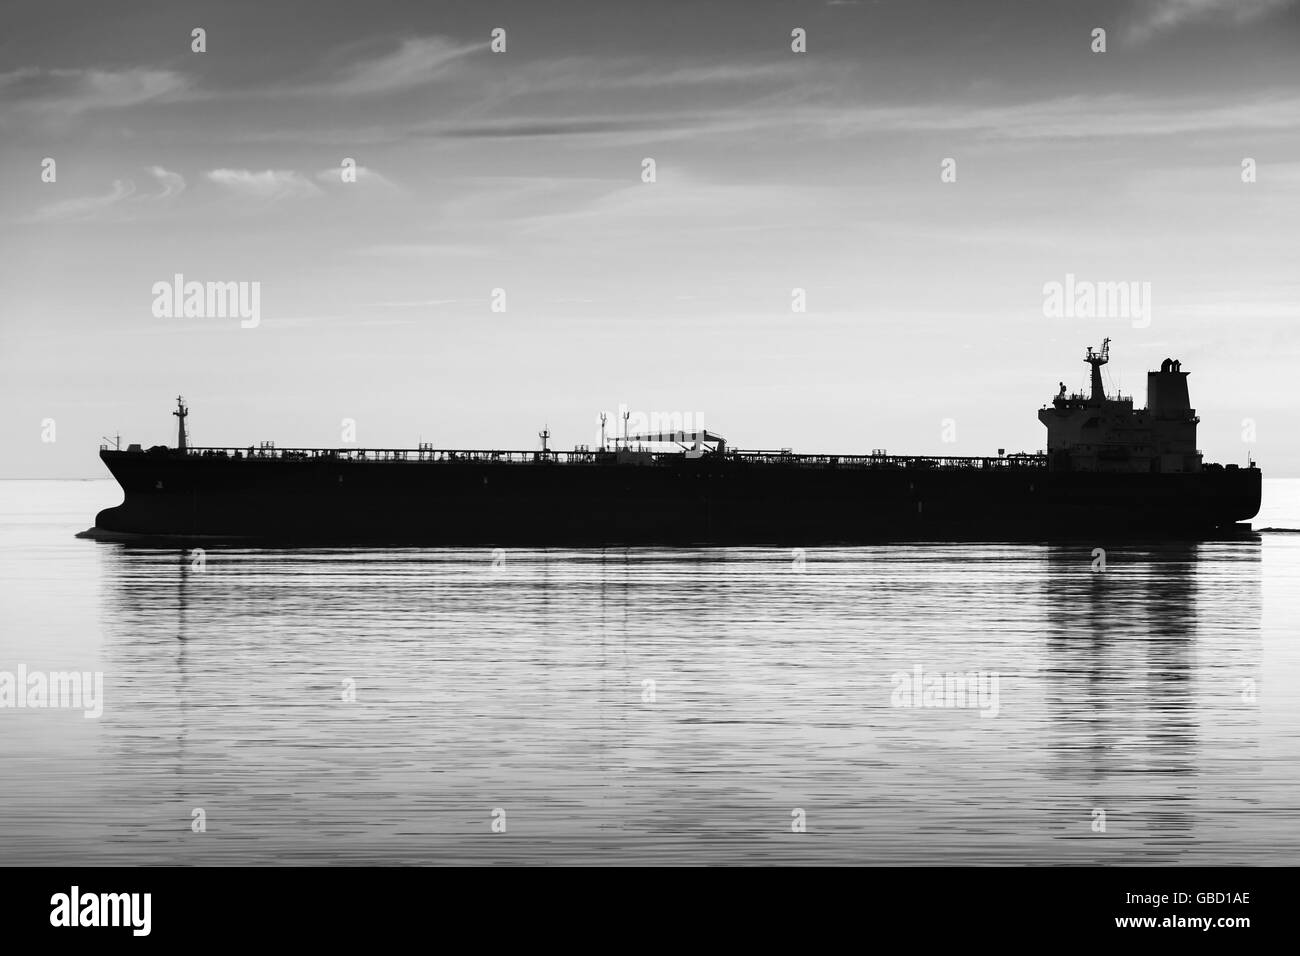 Große industrielle Tanker Schiff geht auf noch Meer Wasser, schwarze und weiße Silhouette Foto Stockfoto